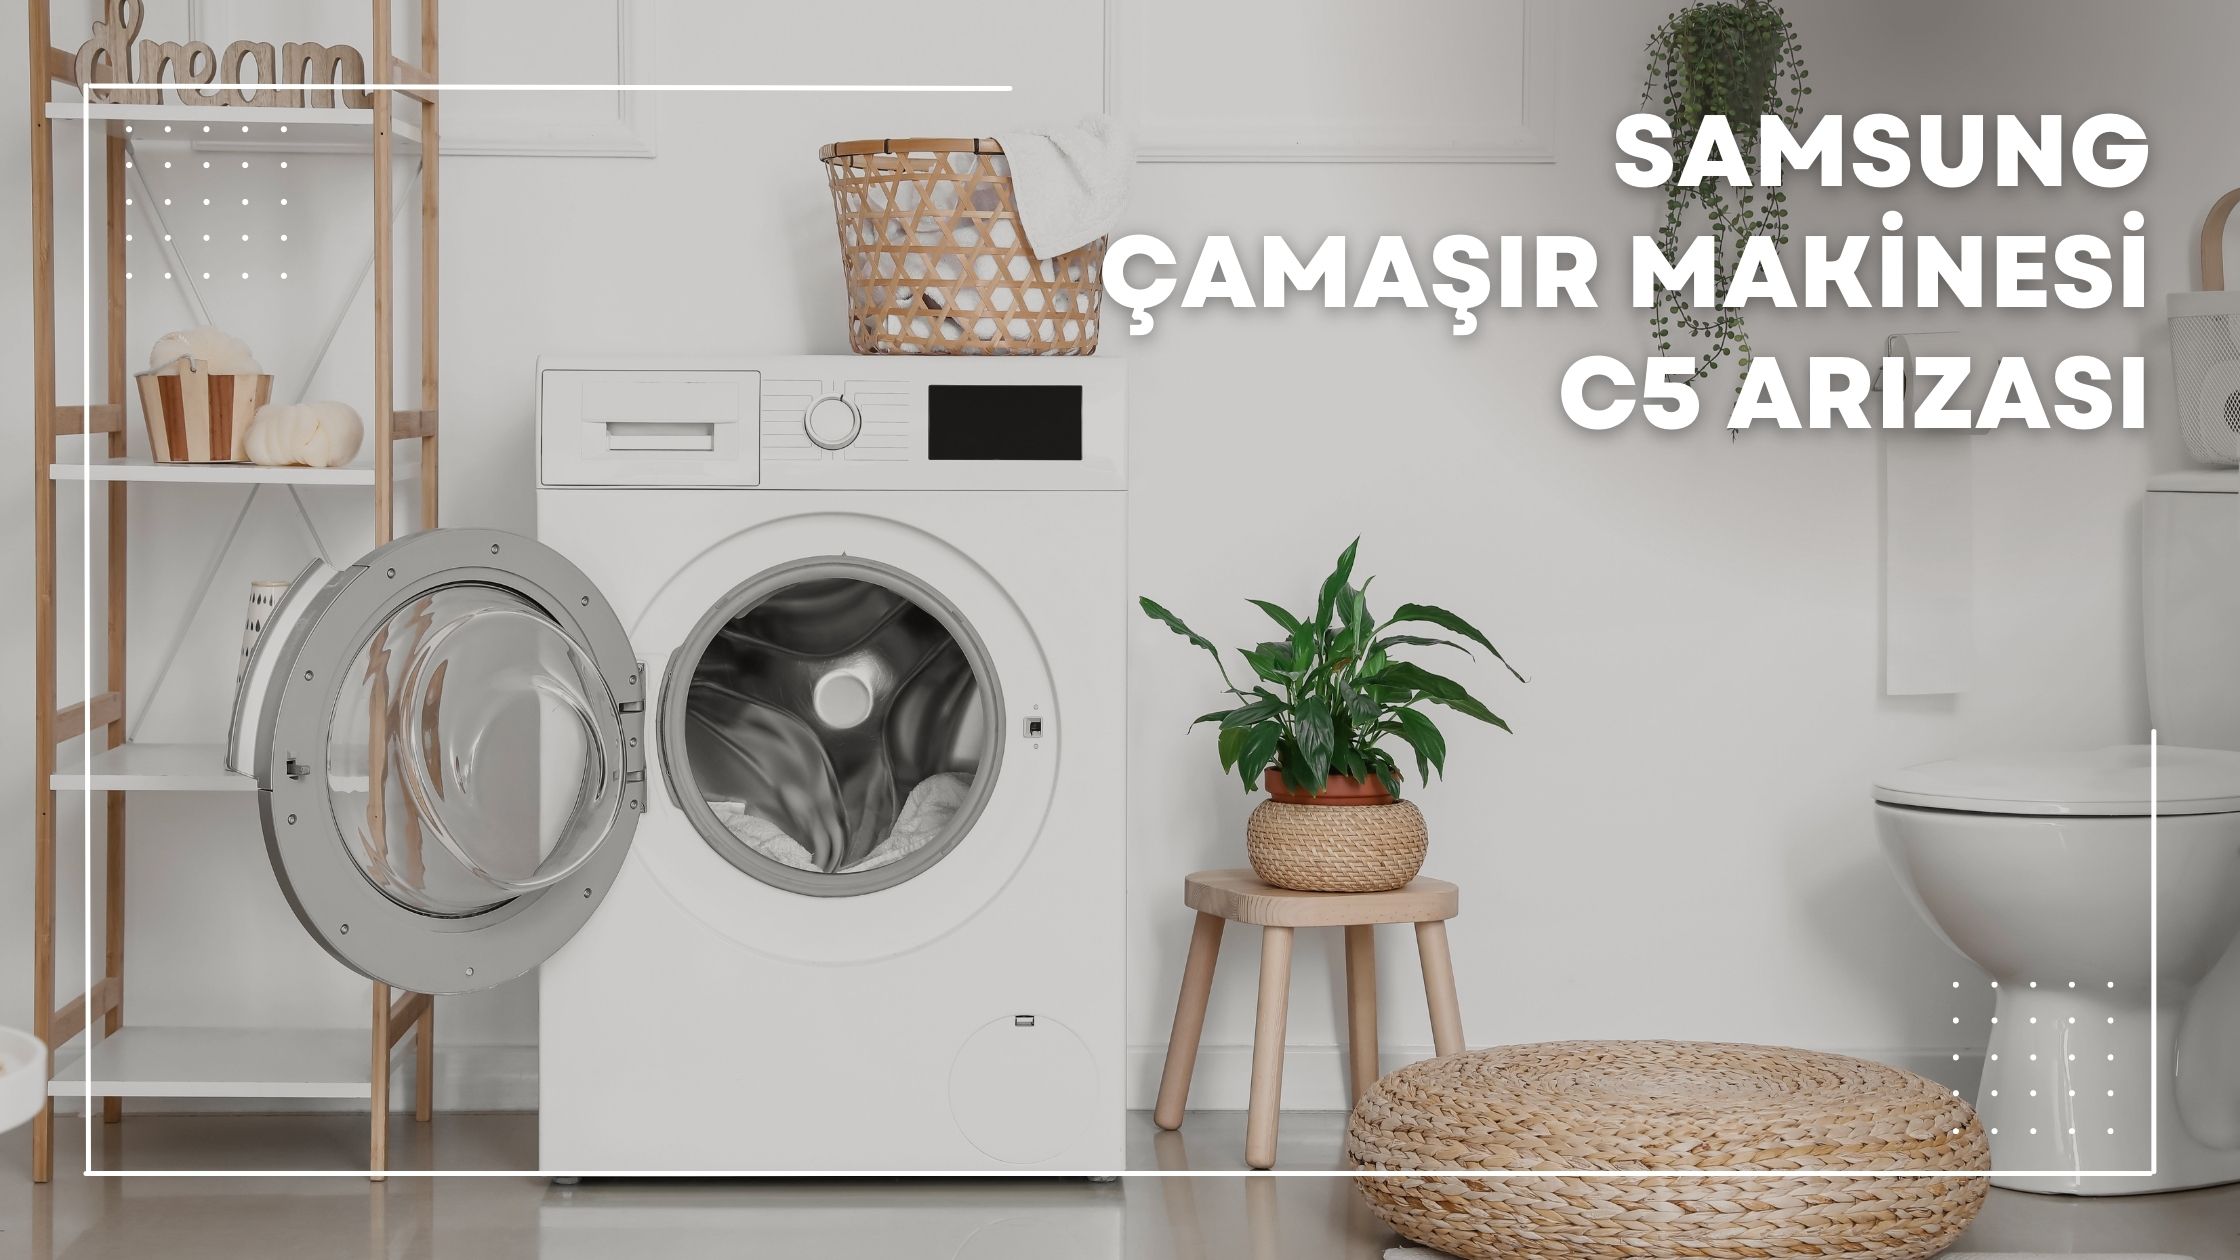 Samsung Çamaşır Makinesi C5 Arızası